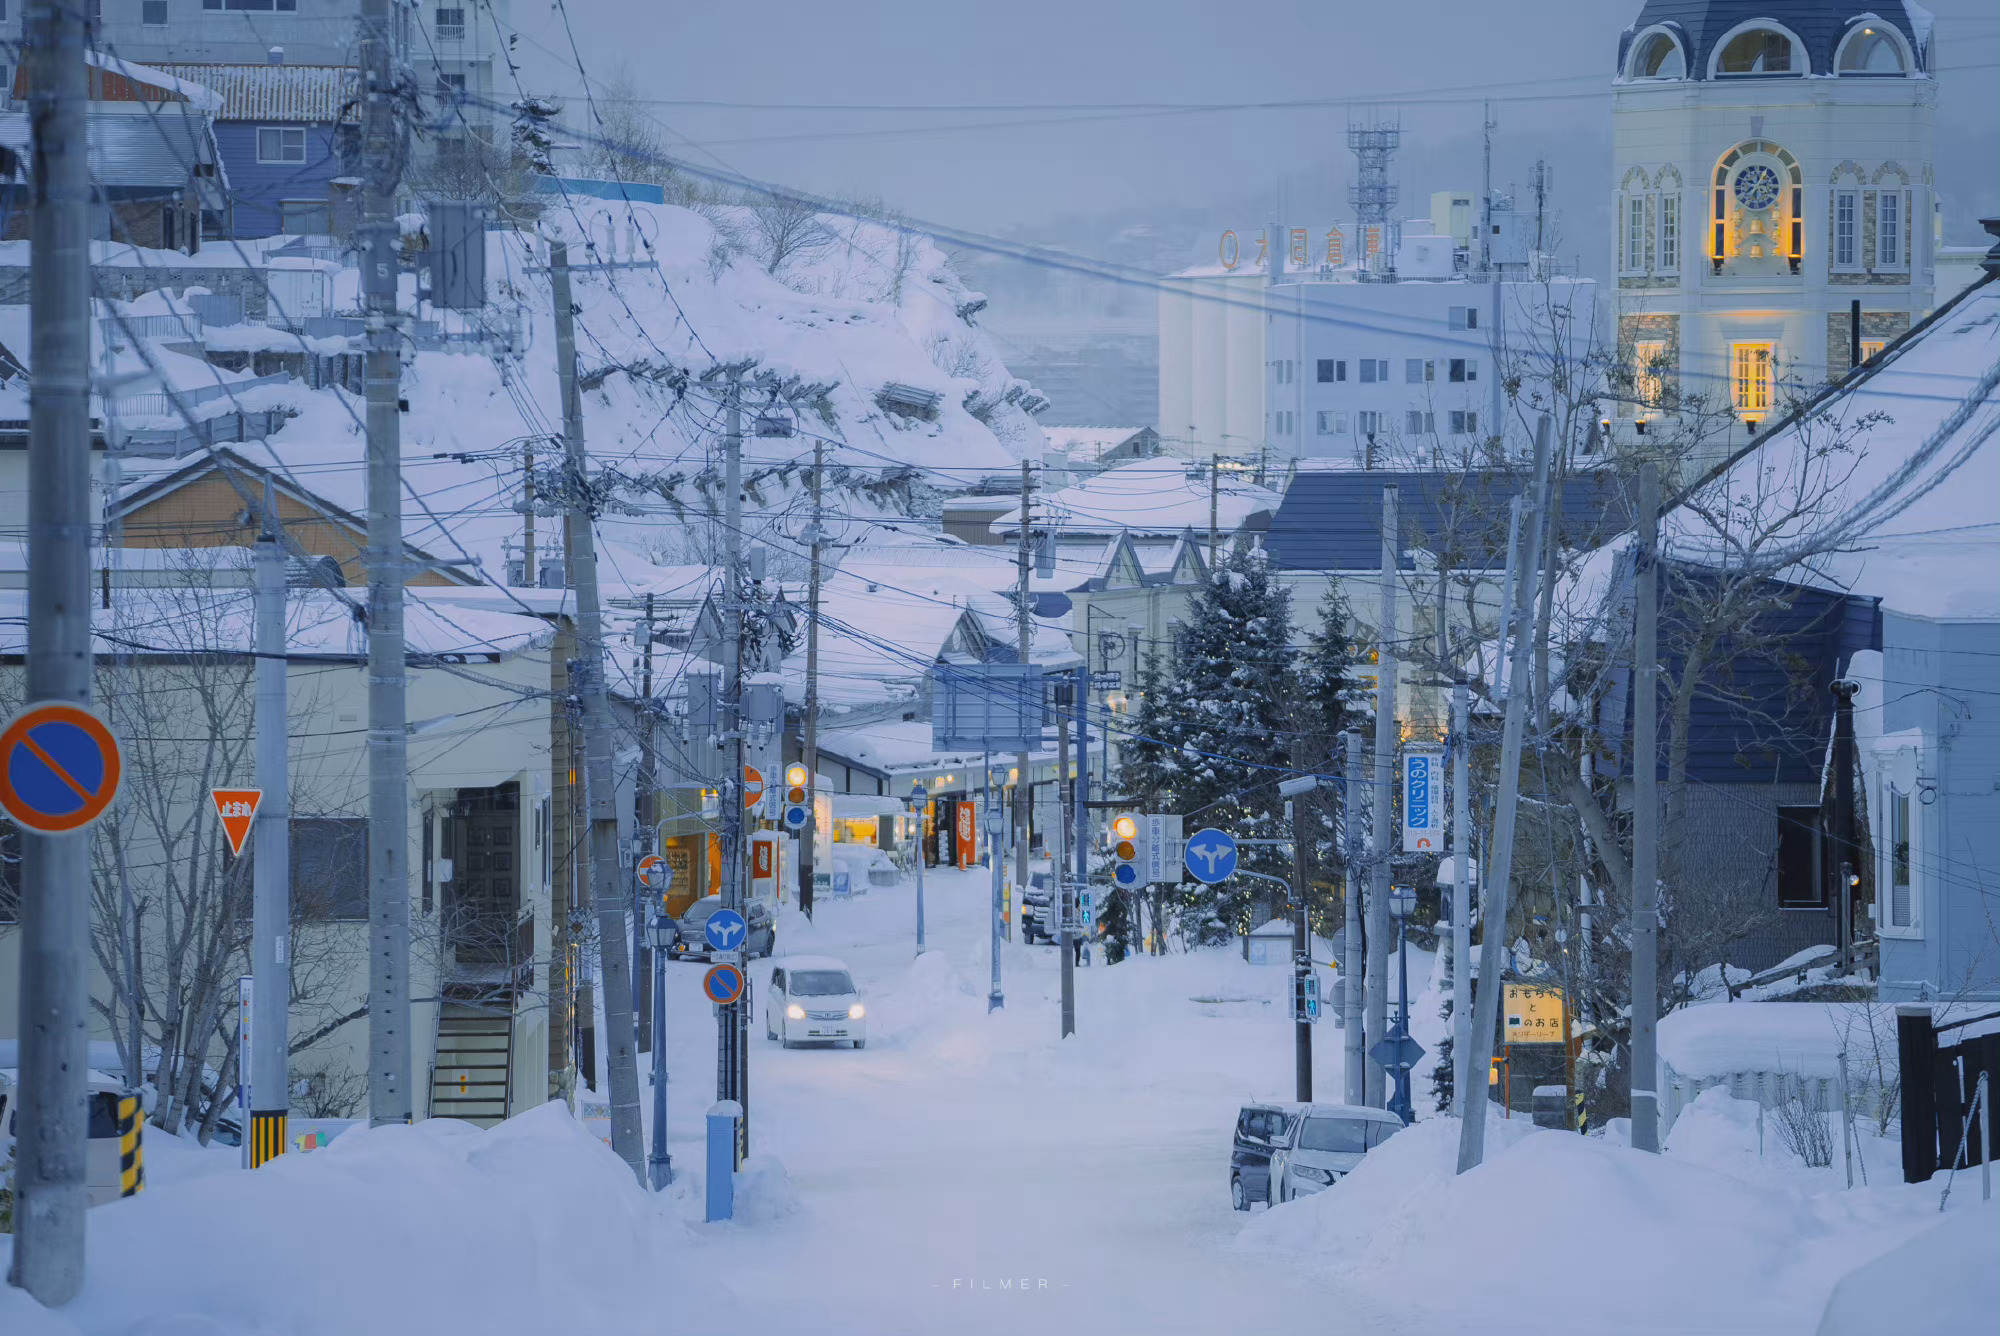 日本北海道 (© Hiroshi Yokoyama/eStock Photo) @20201116 | NiceBing 必应美图 - 精彩世界,一触即发